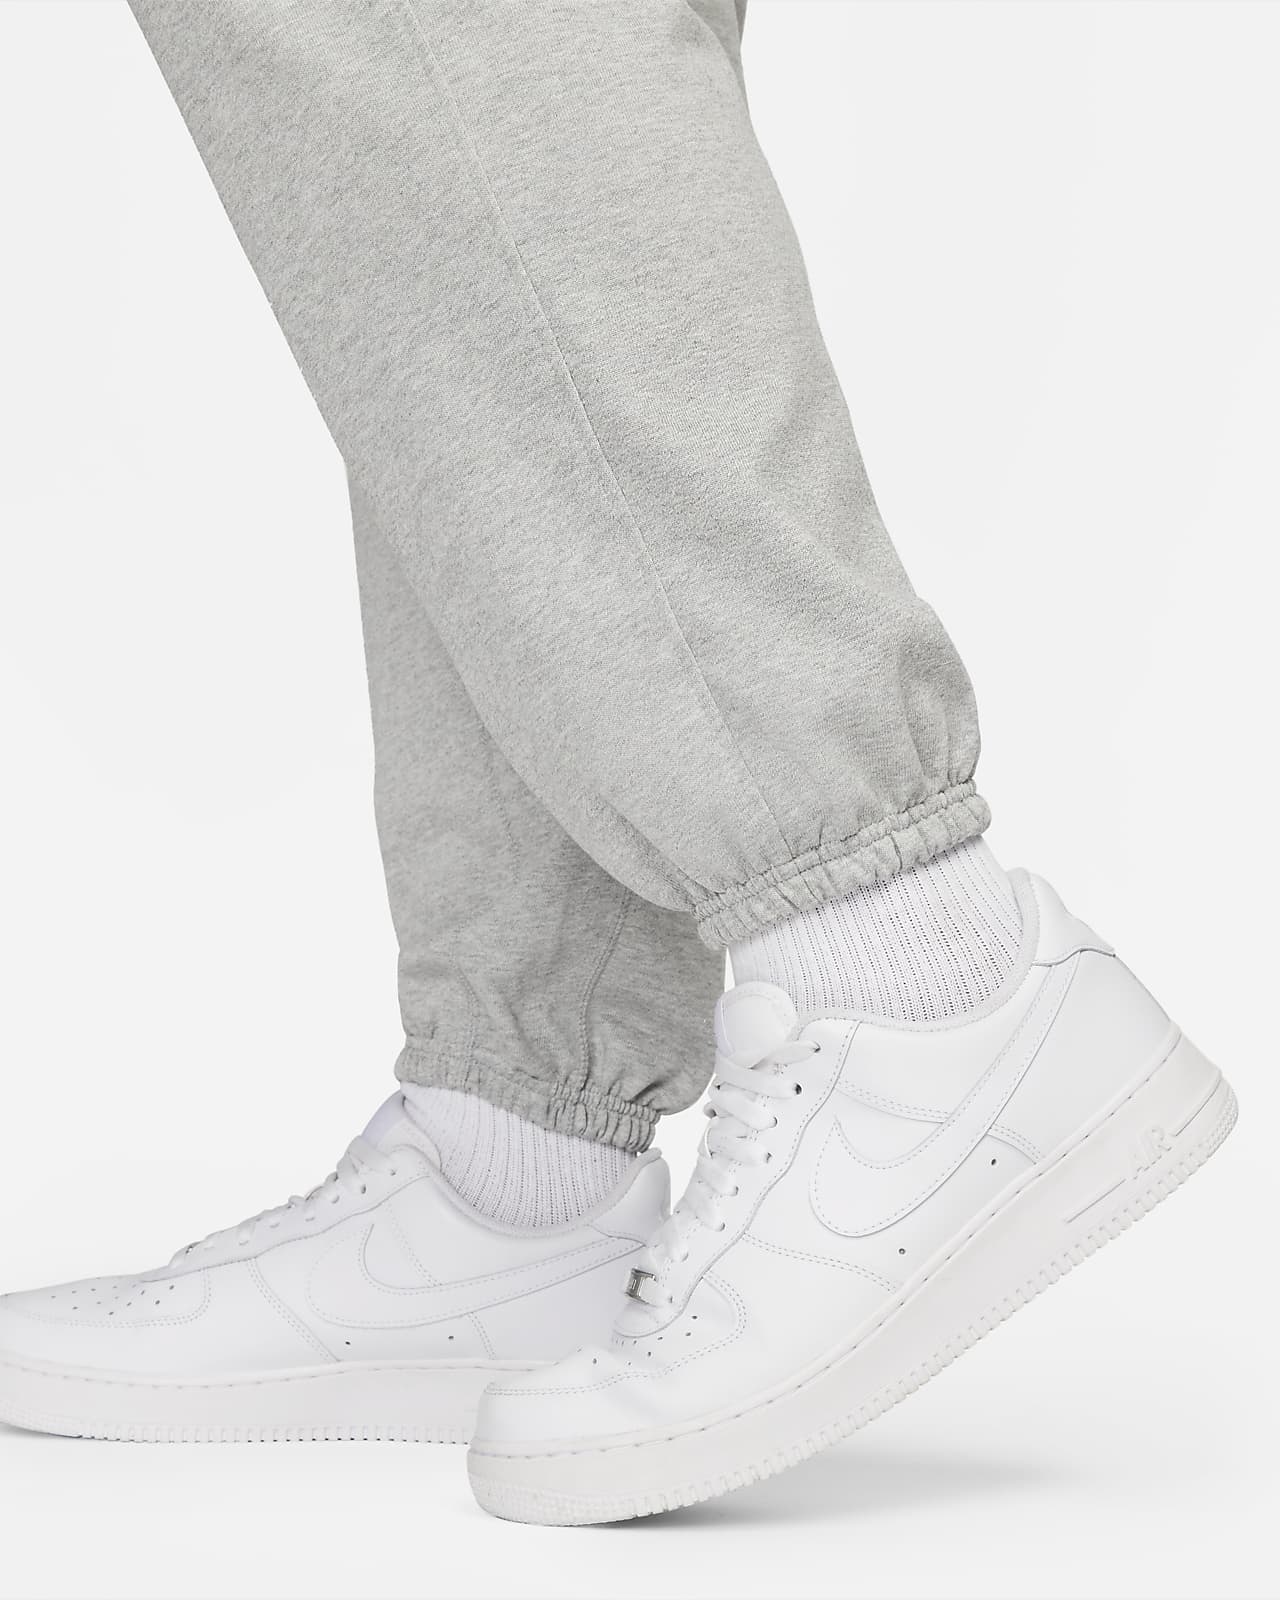 Nike Standard Issue Dri-FIT Pants.